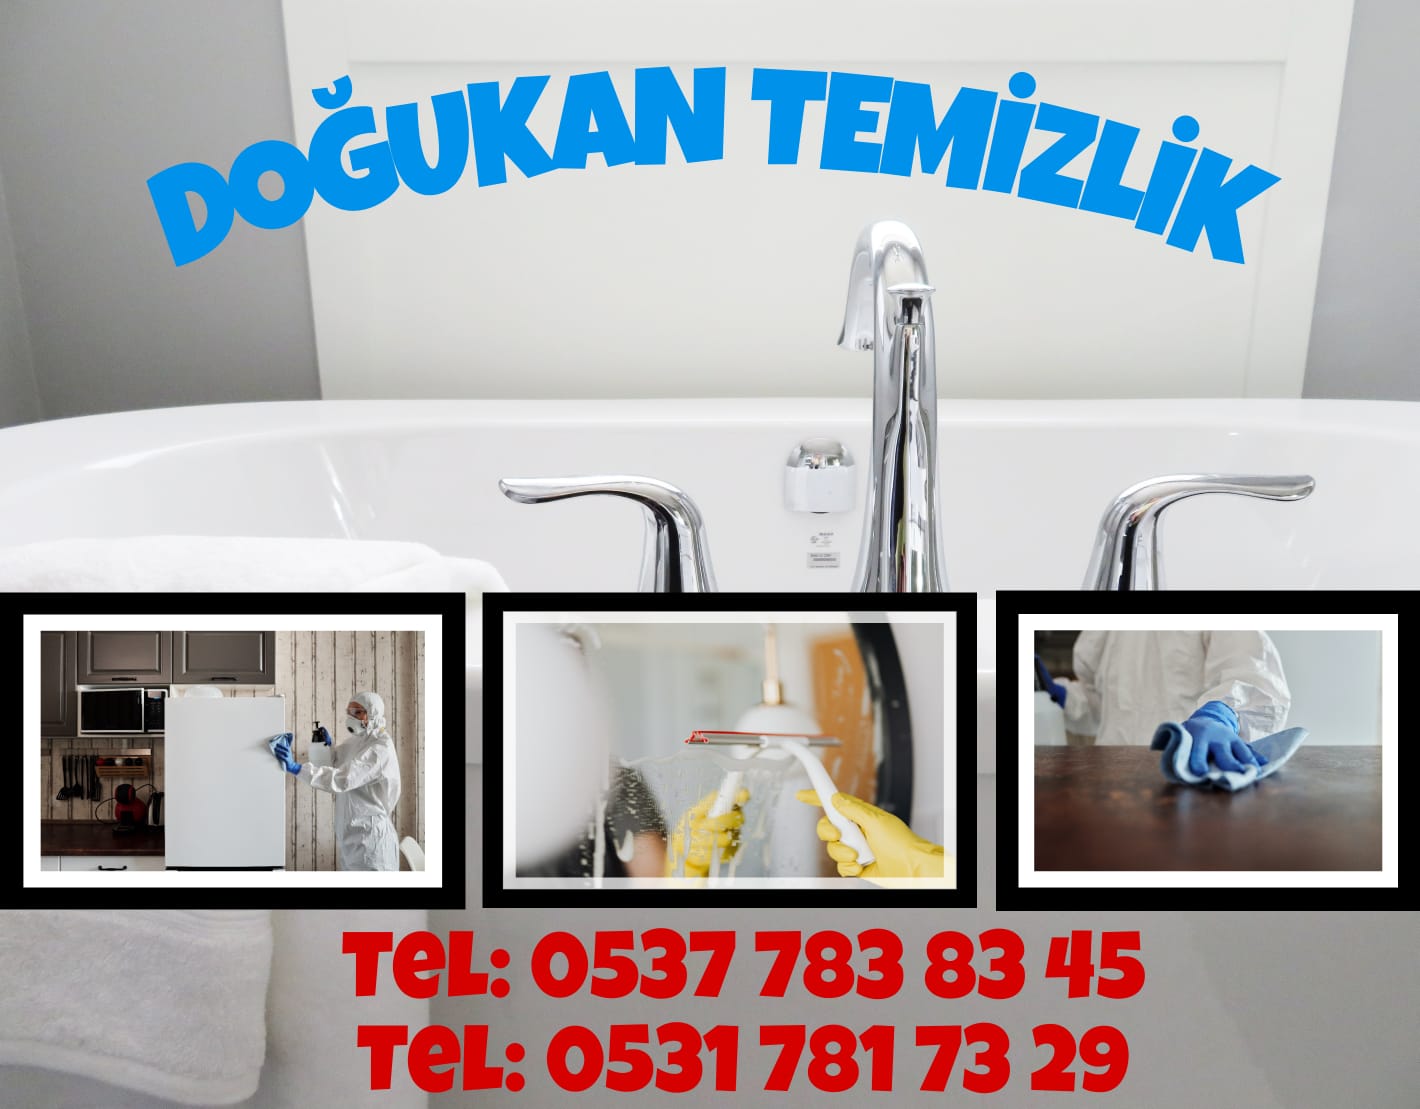 Ankara Temizlik Fiyatları